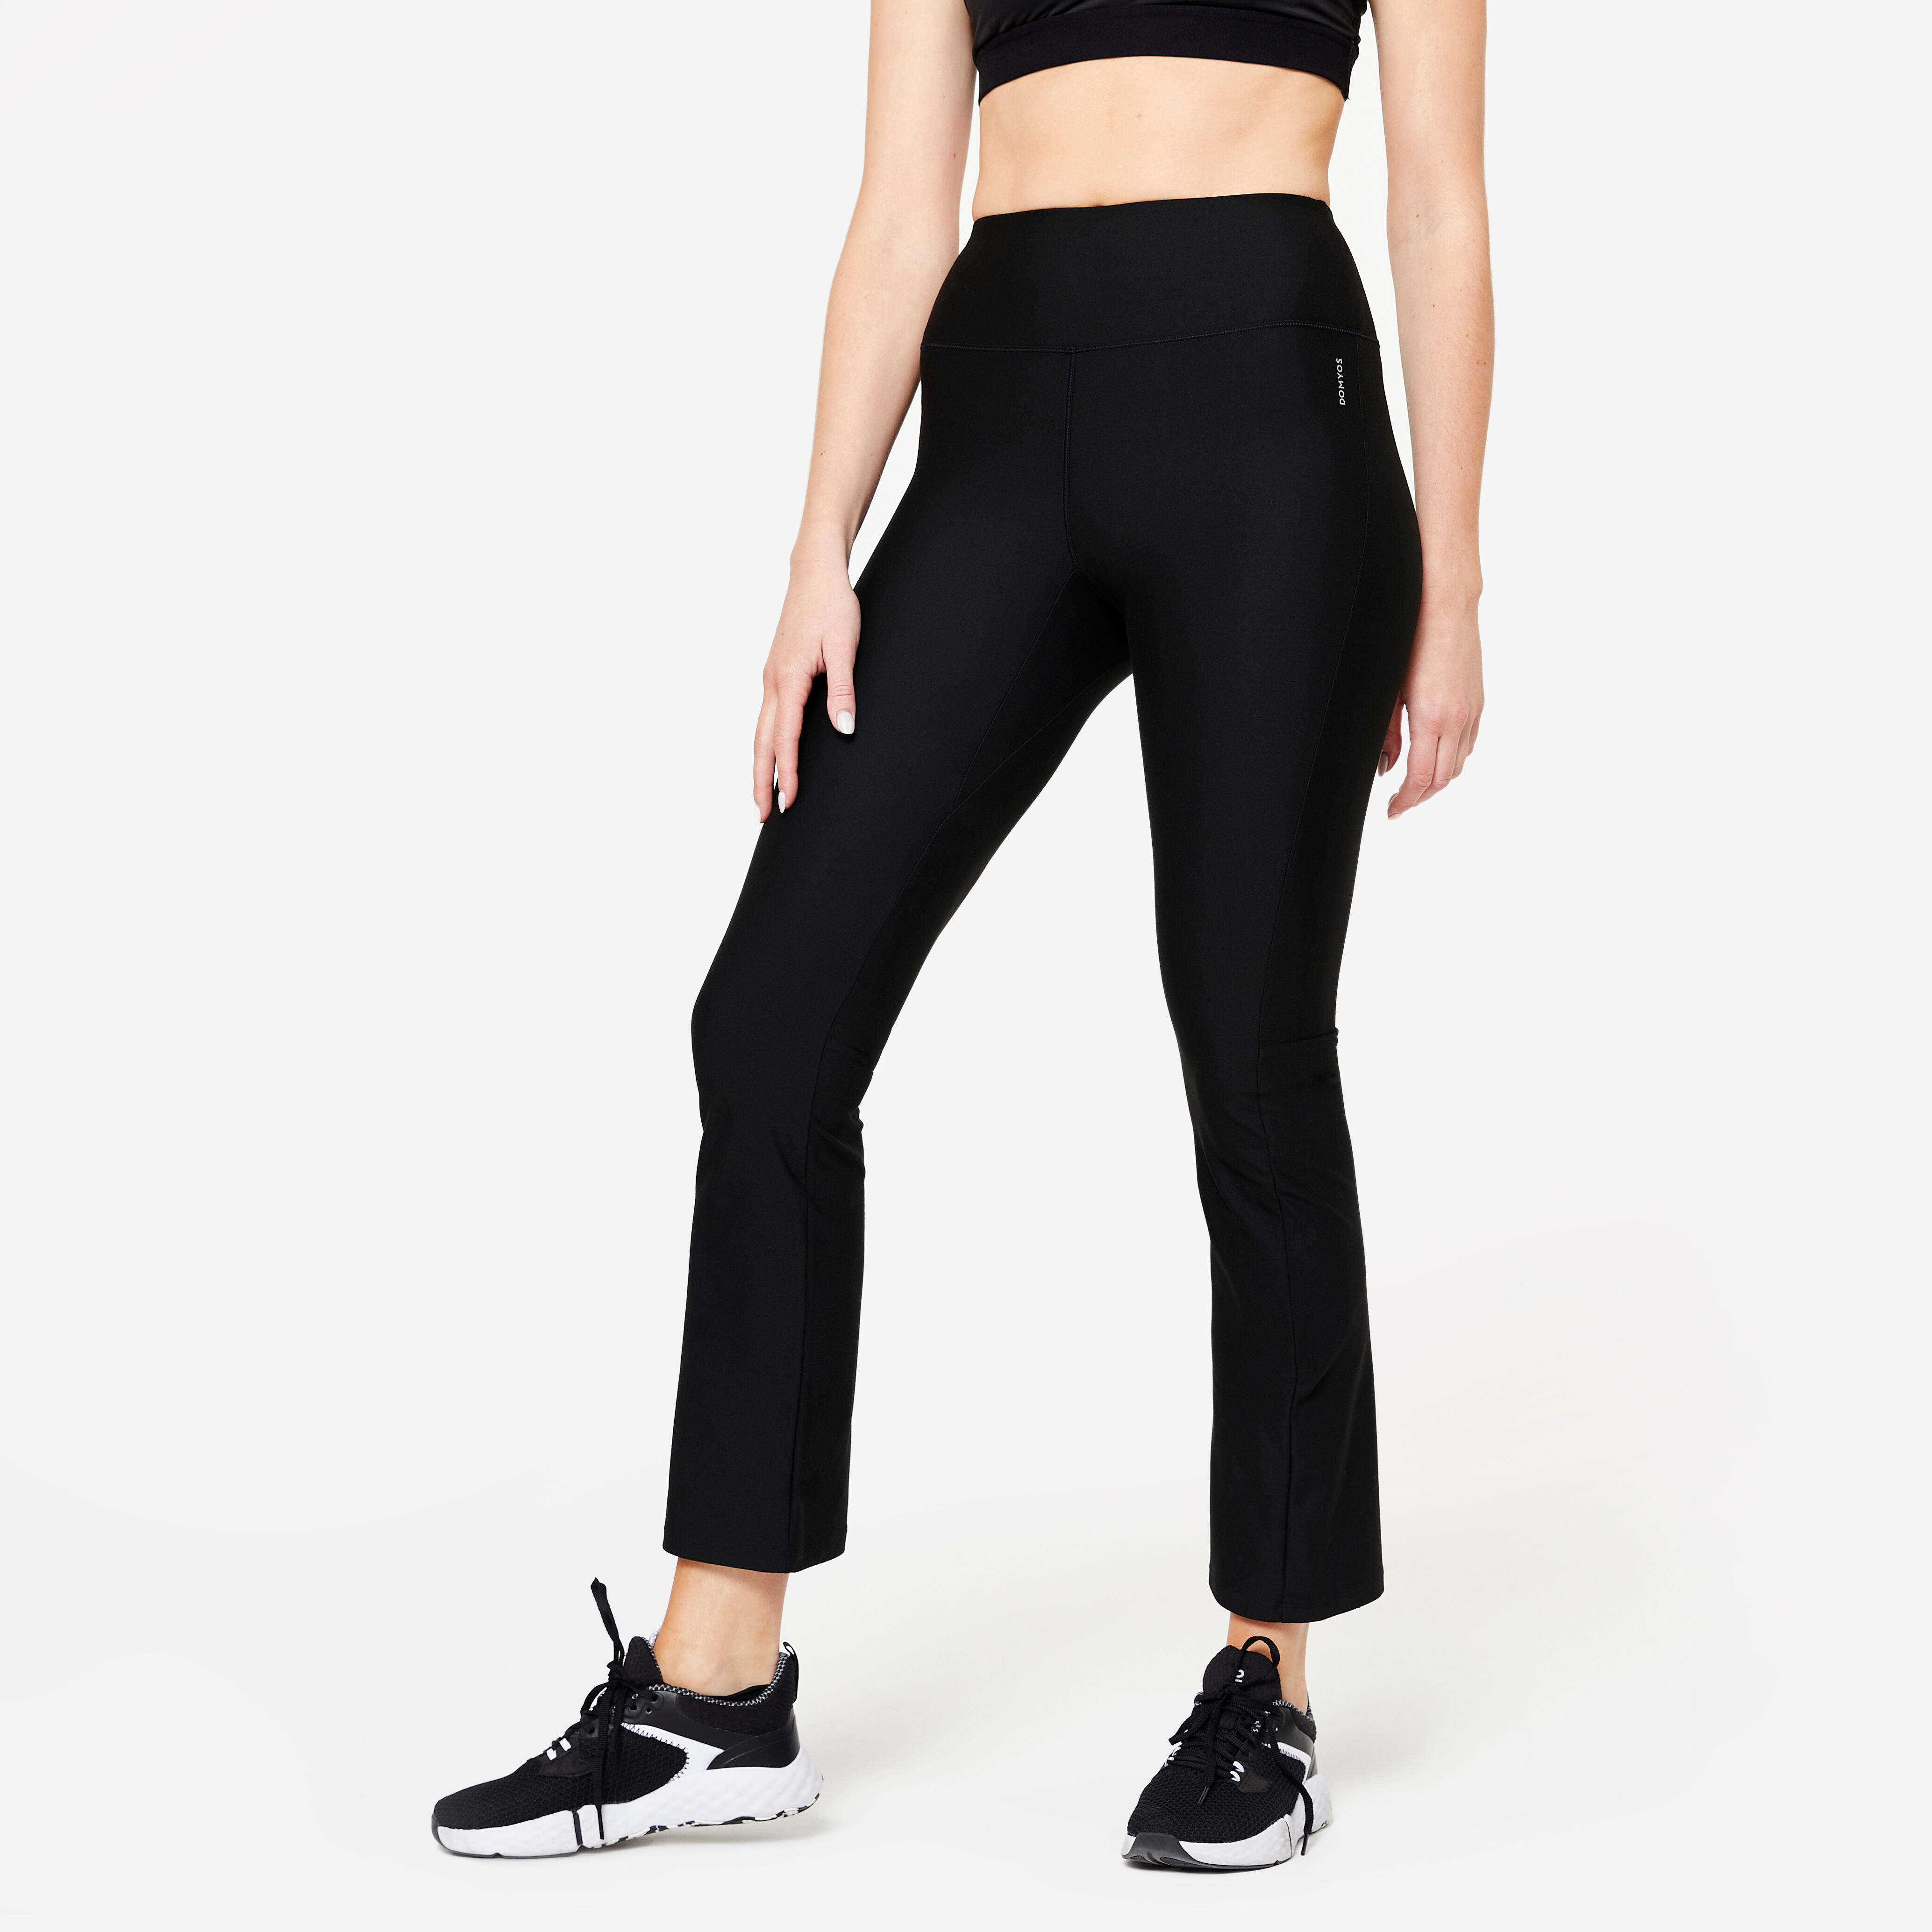 Women’s Fitness Leggings – FTI 100 Black